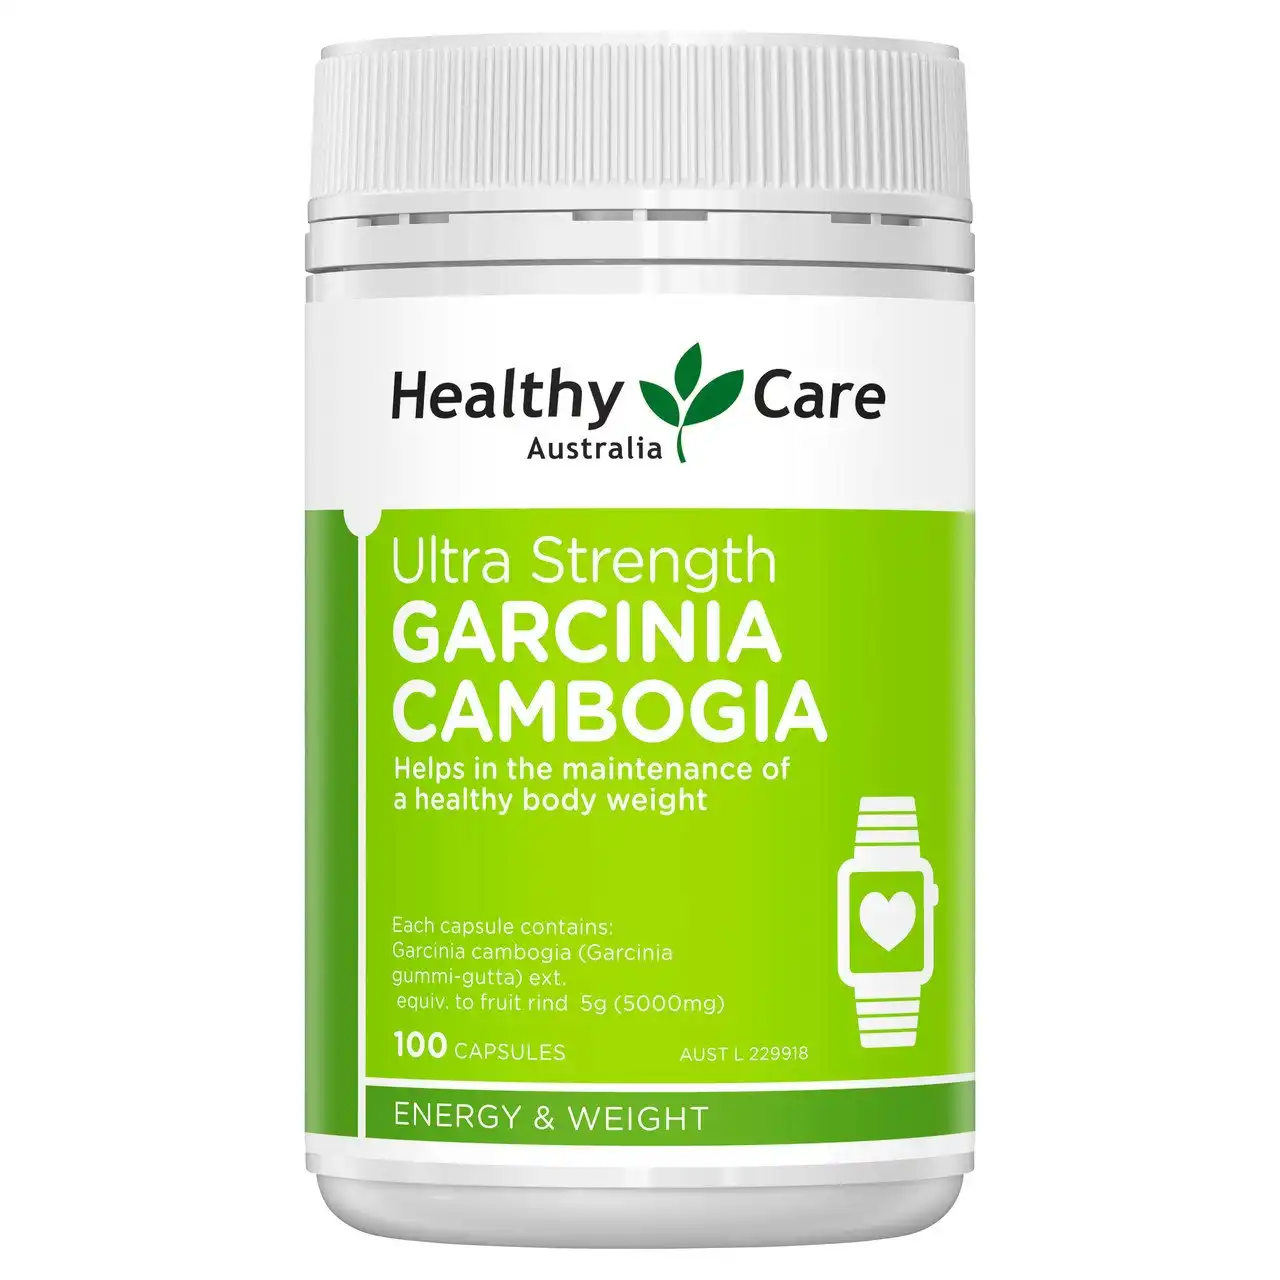 Healthy Care Garcinia Cambogia 100 Capsules